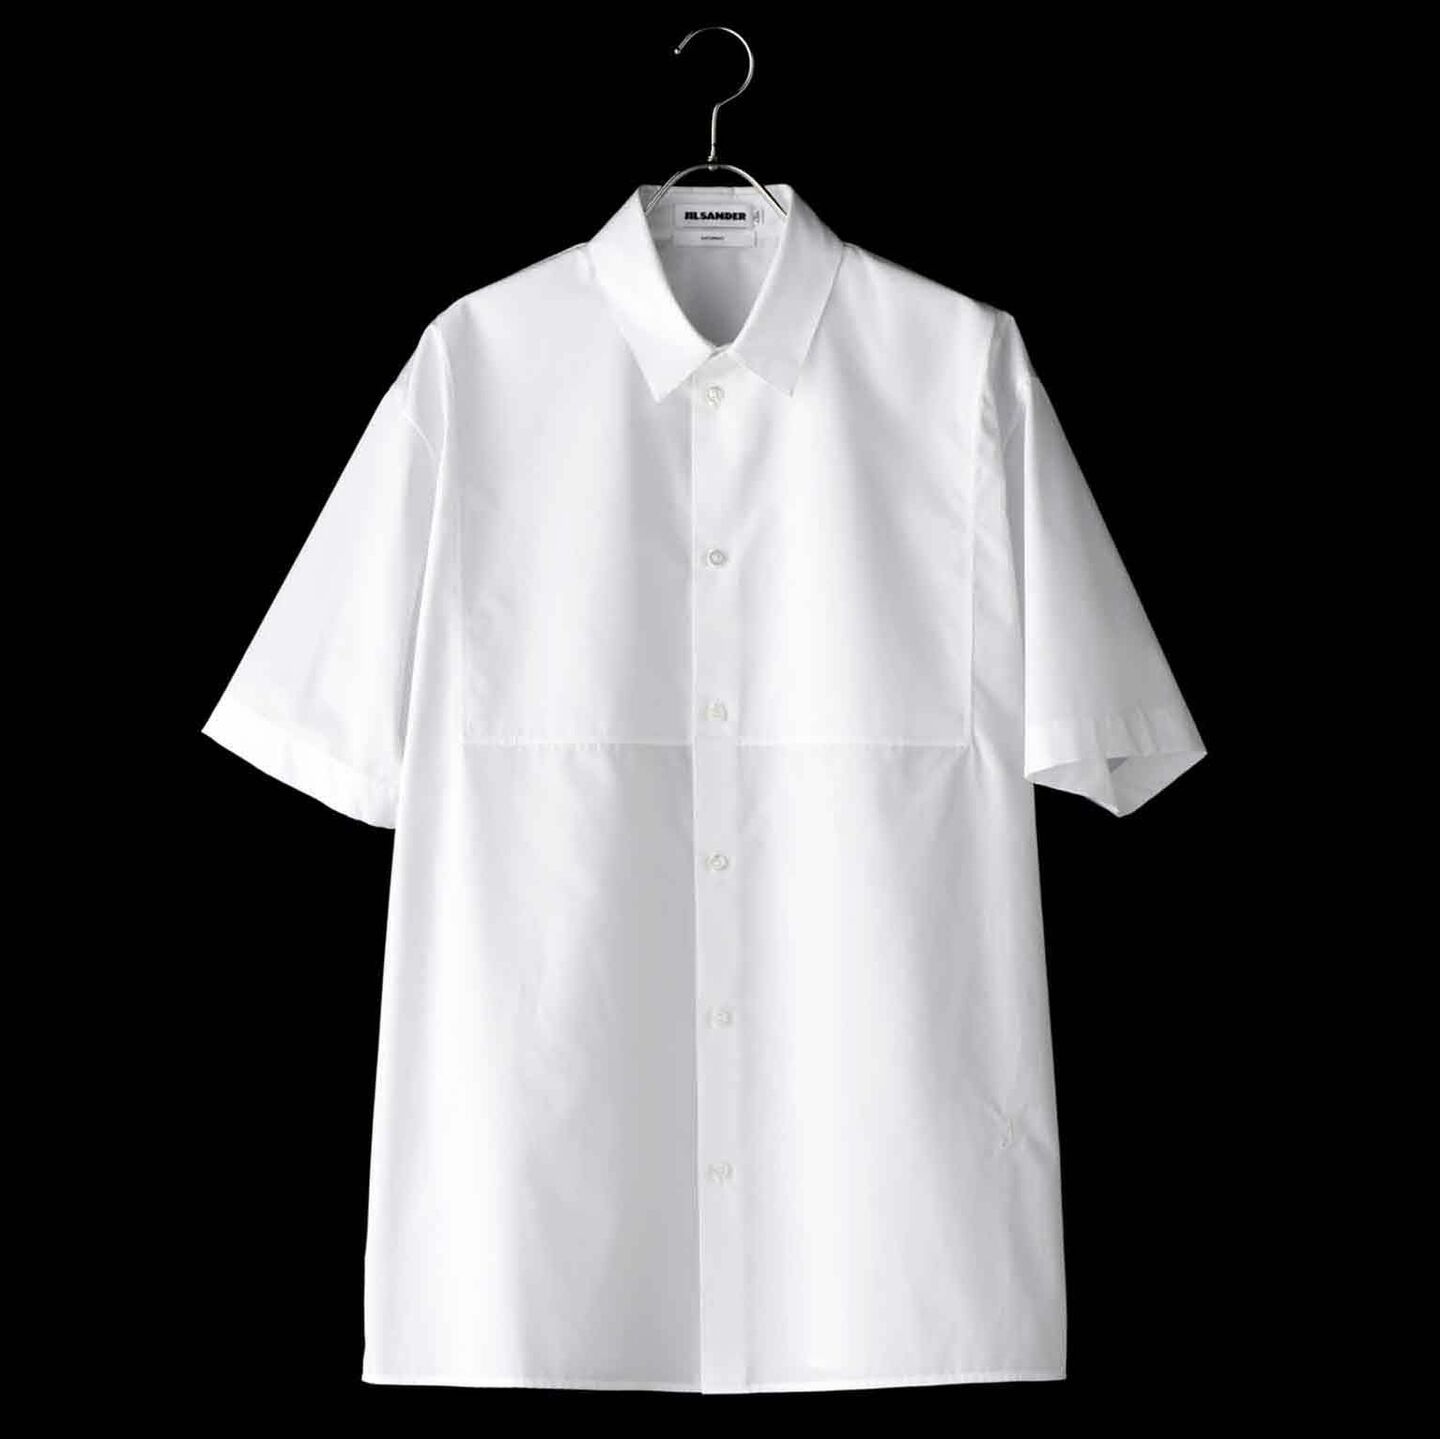 「ジル・サンダー」には男の願望を叶える究極の白シャツがある | MEN'S Precious（メンズプレシャス）